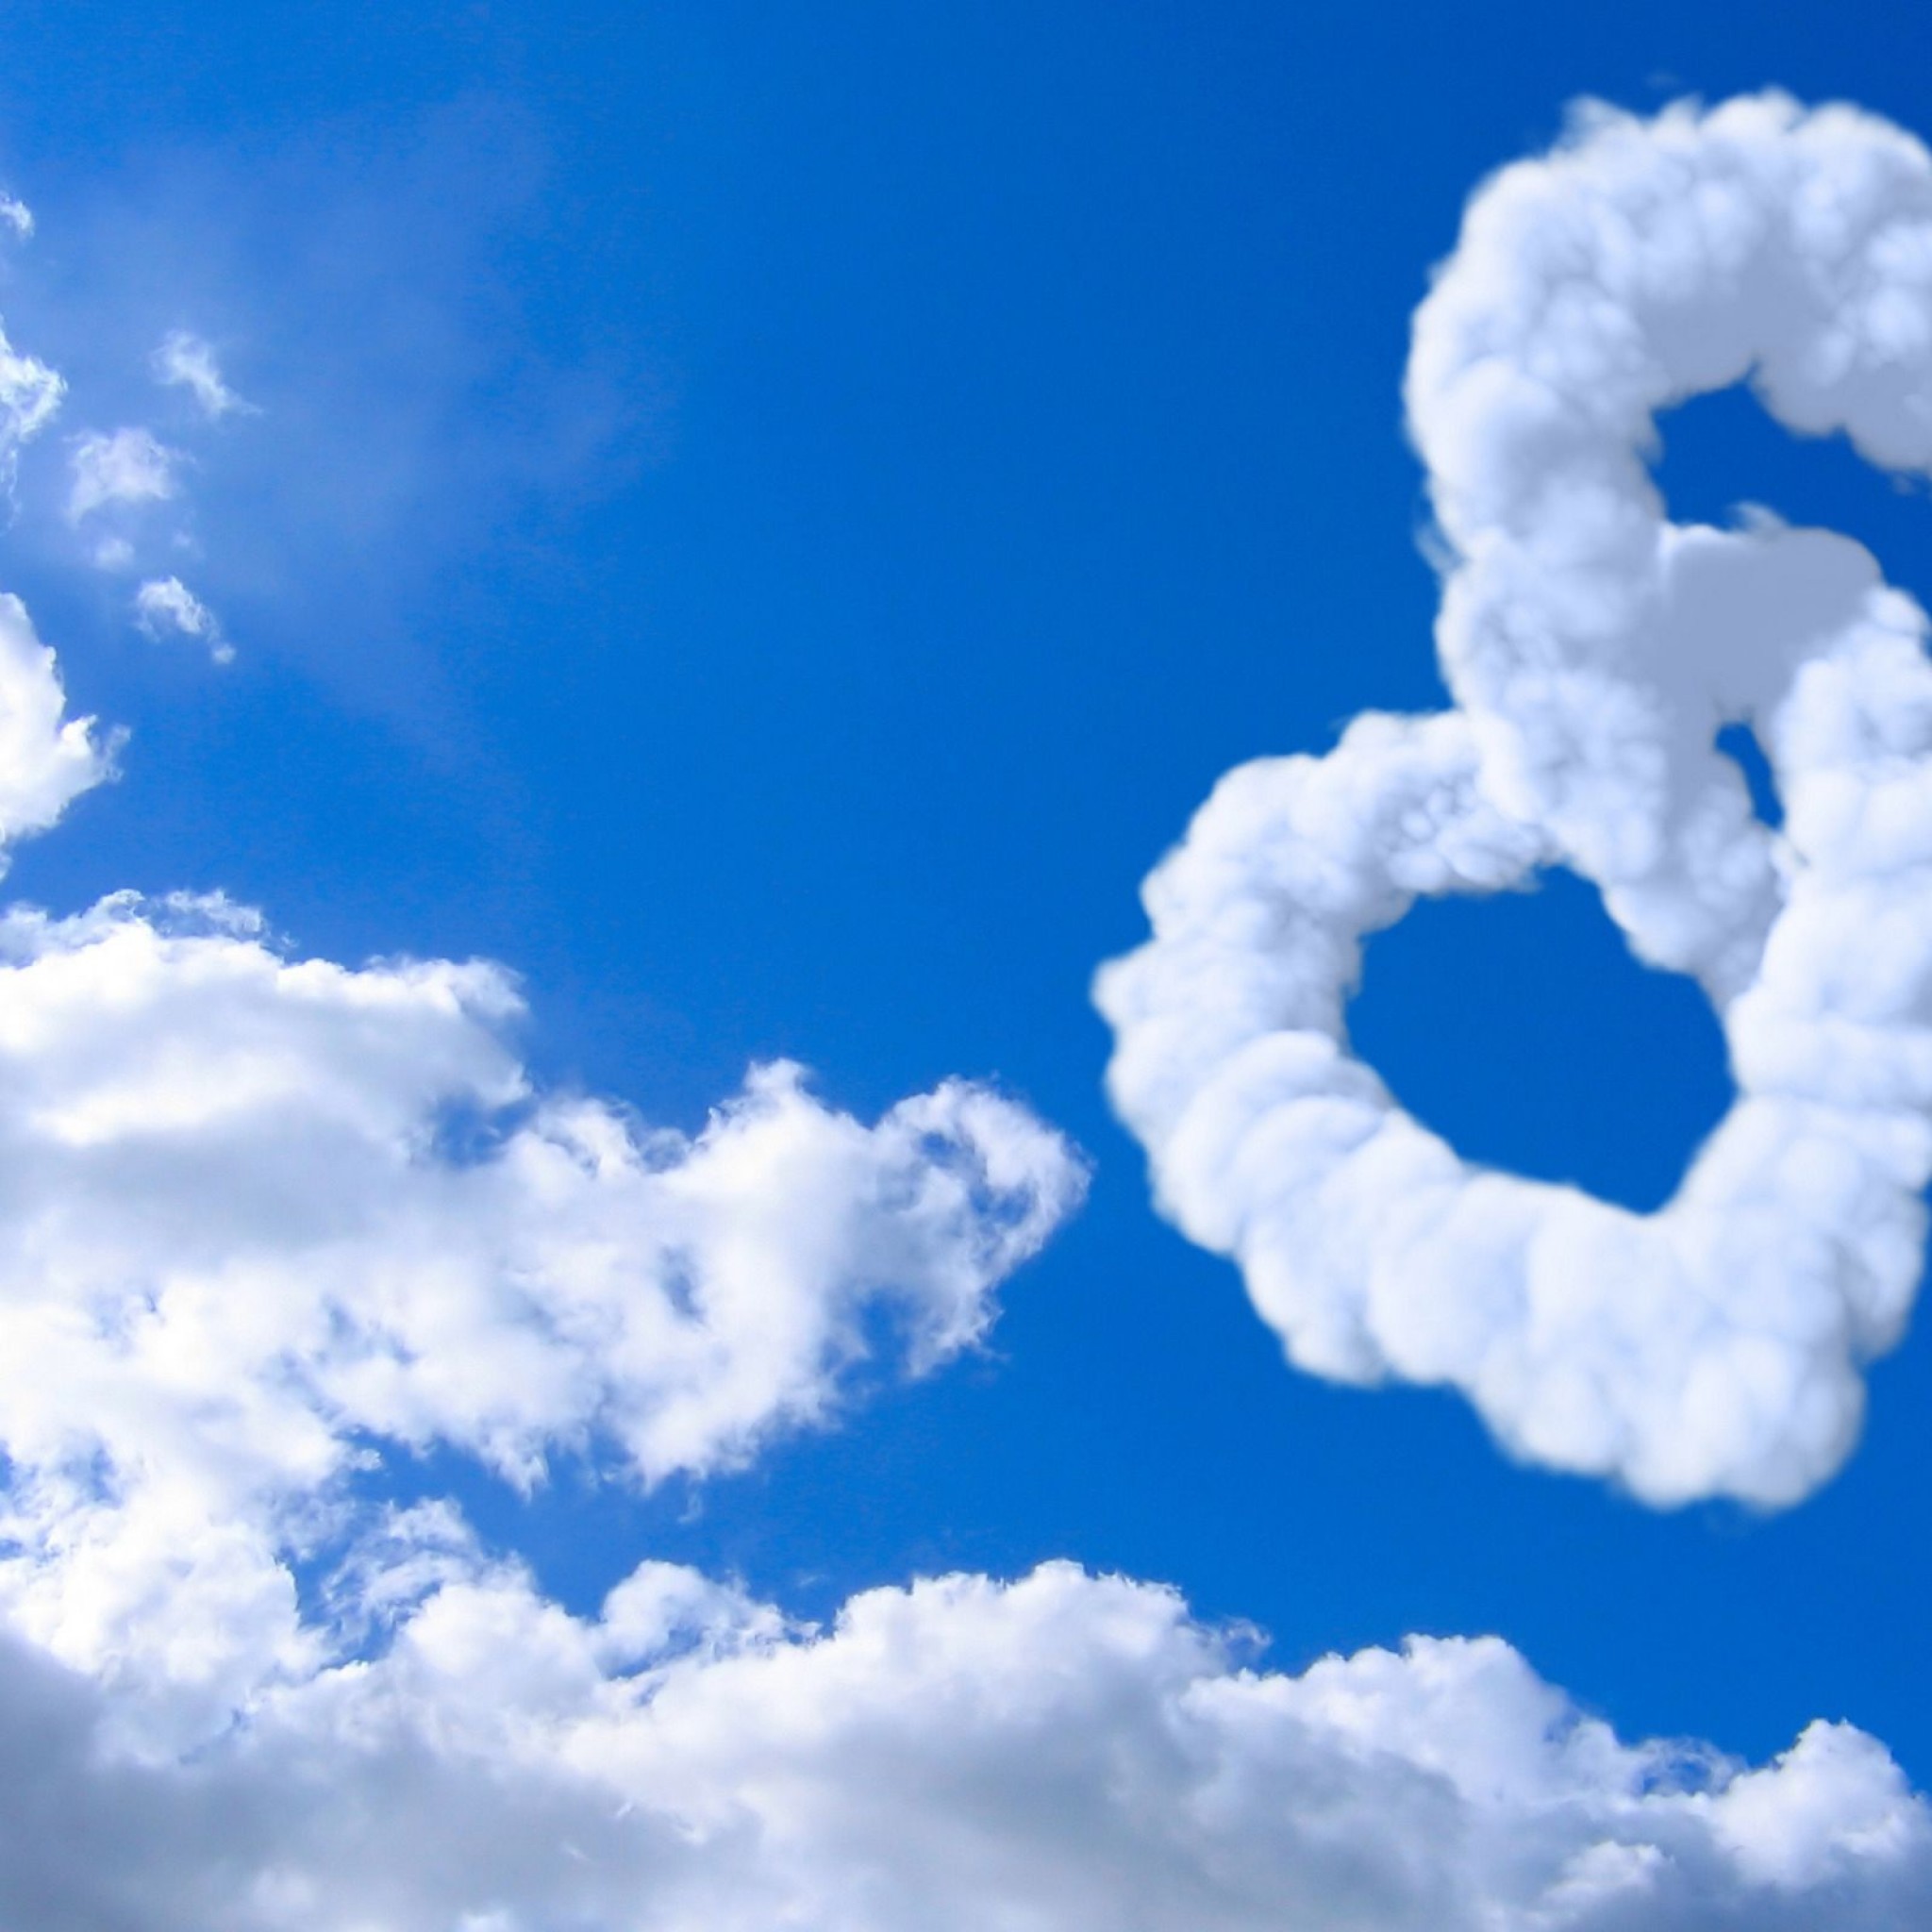 Love Heart Clouds In Blue Sky Heart February S Sky Heart Image HD